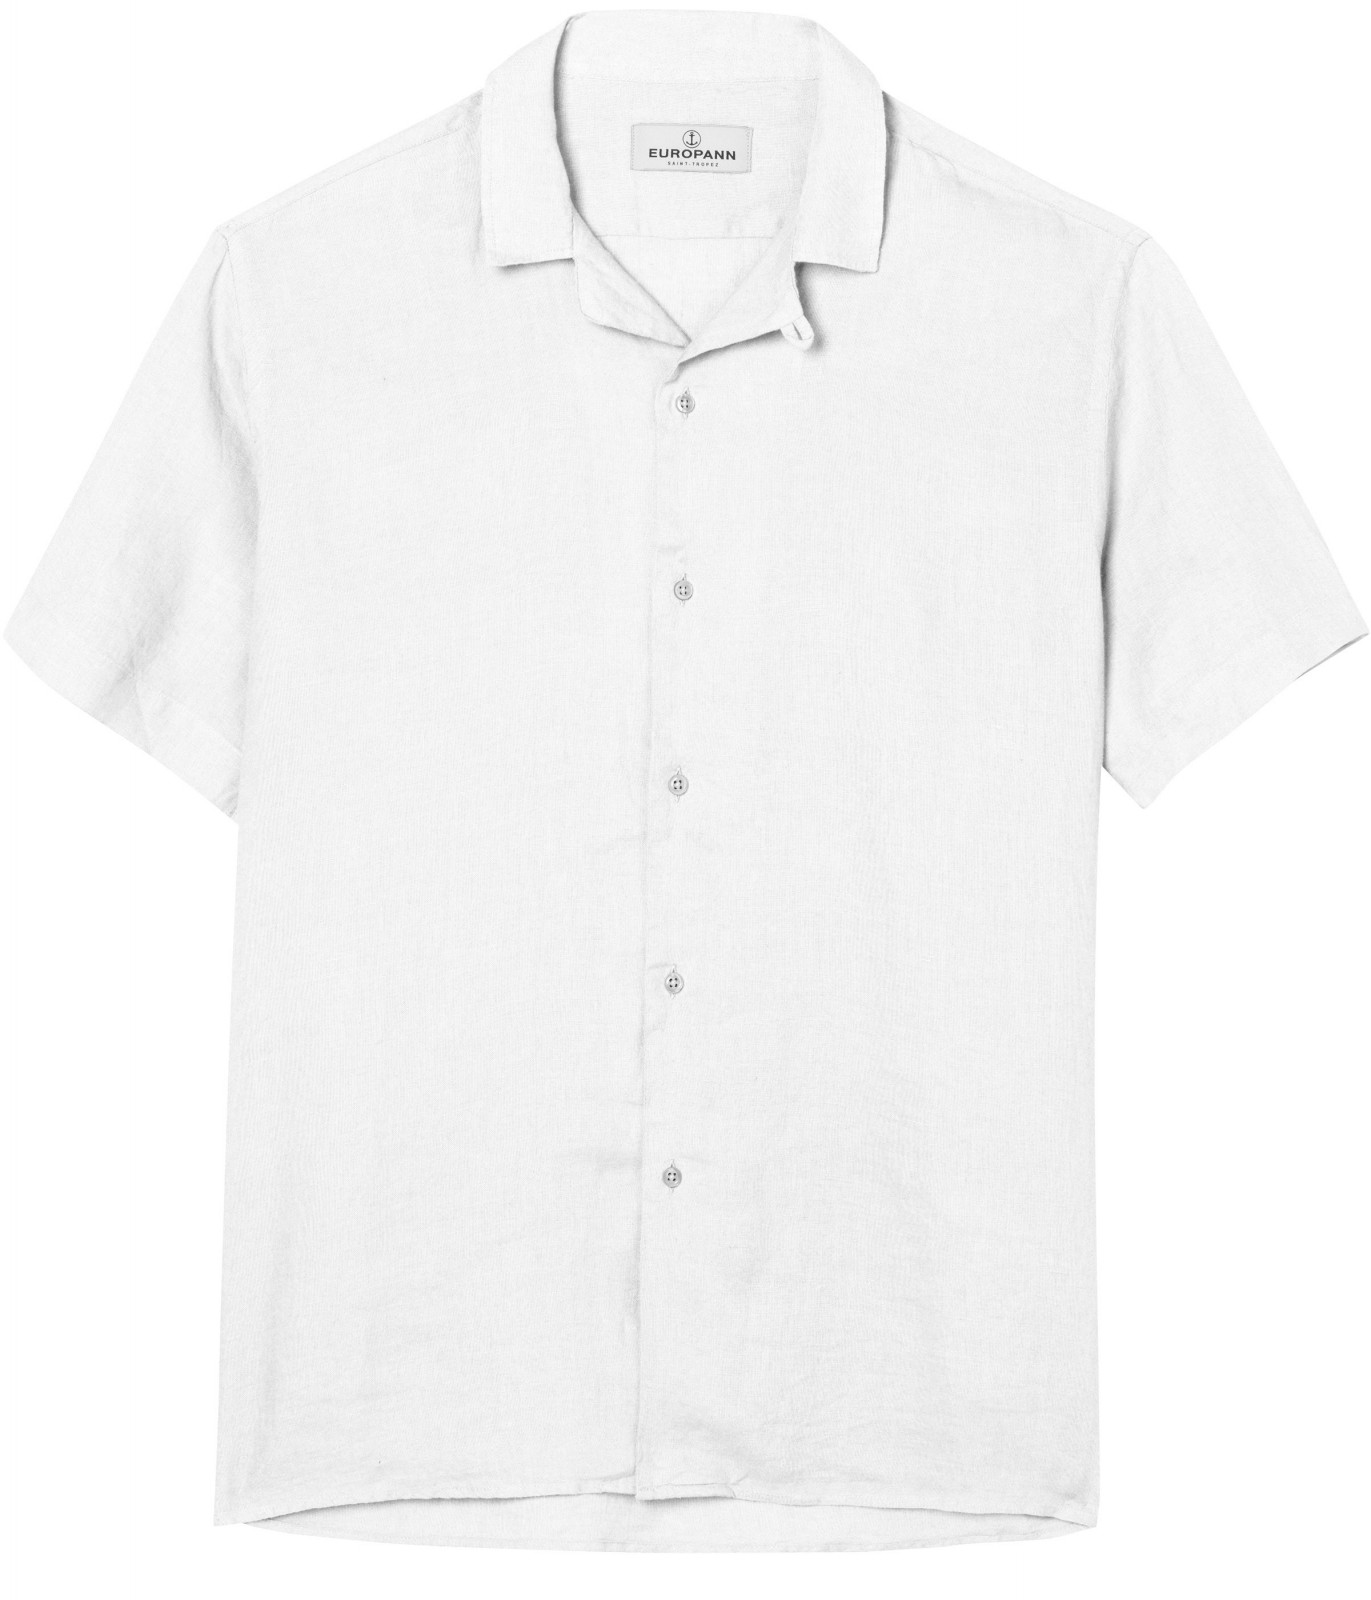 Plain white color short sleeves shirt for men |Quality brand Europann